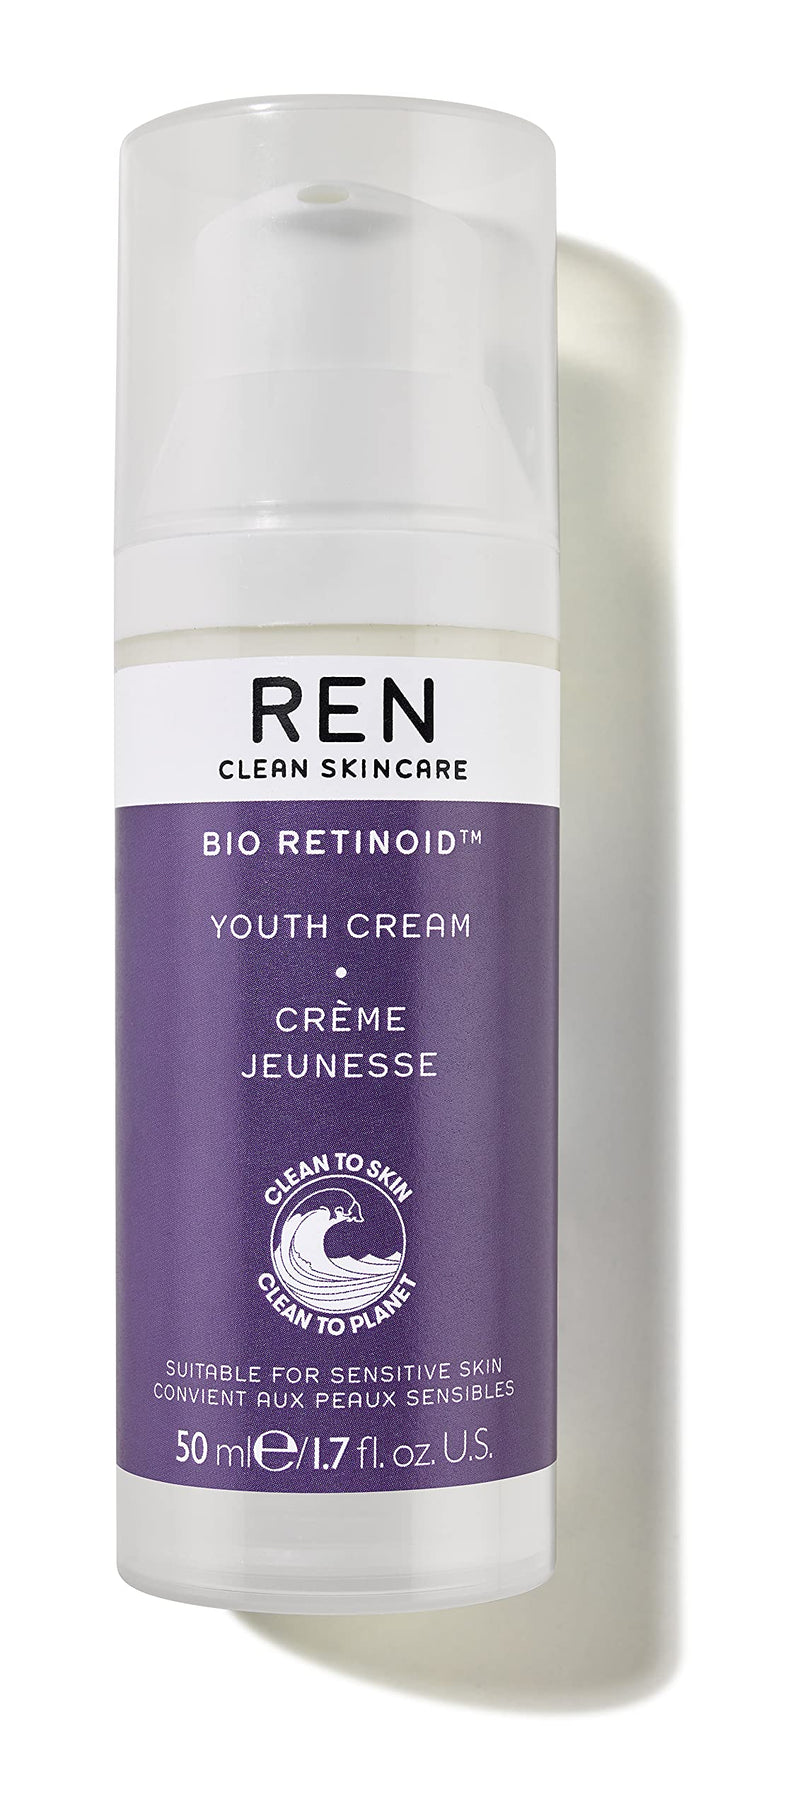 Bio Retinoid Youth Cream - NewNest Australia